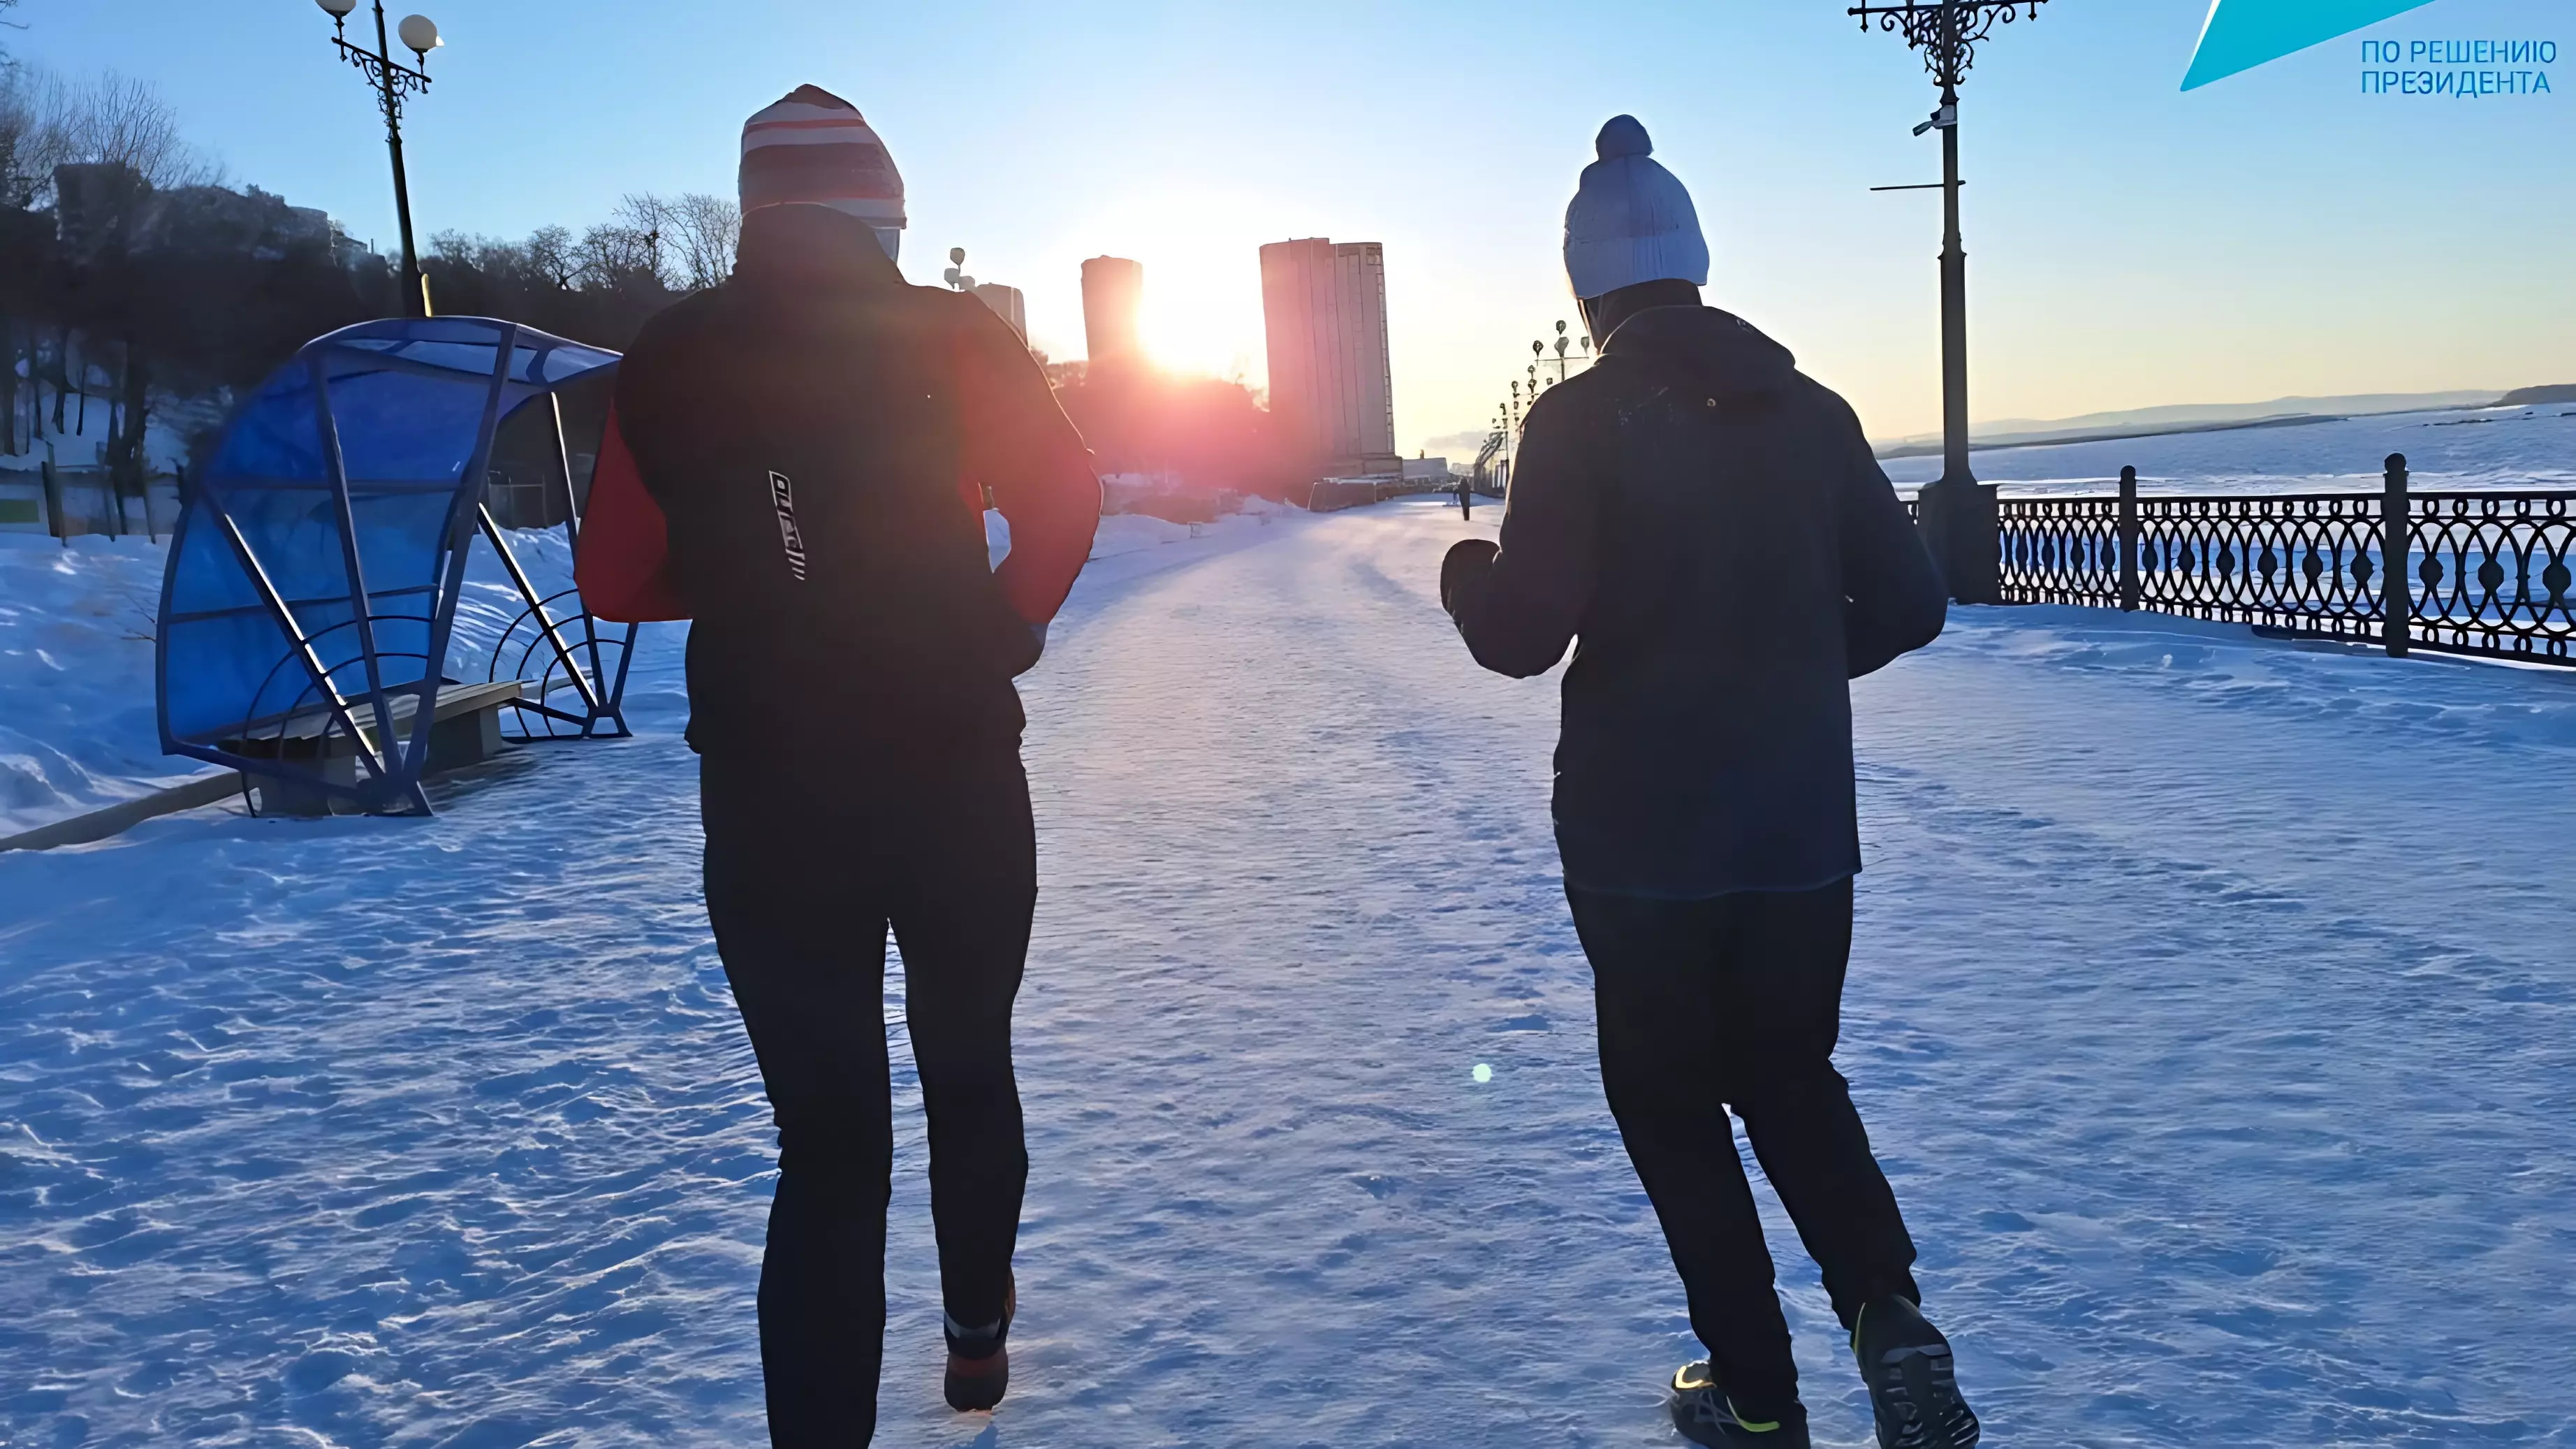 Спортивные выходные с «Доступным спортом» — зимние забеги и «Лед надежды нашей»